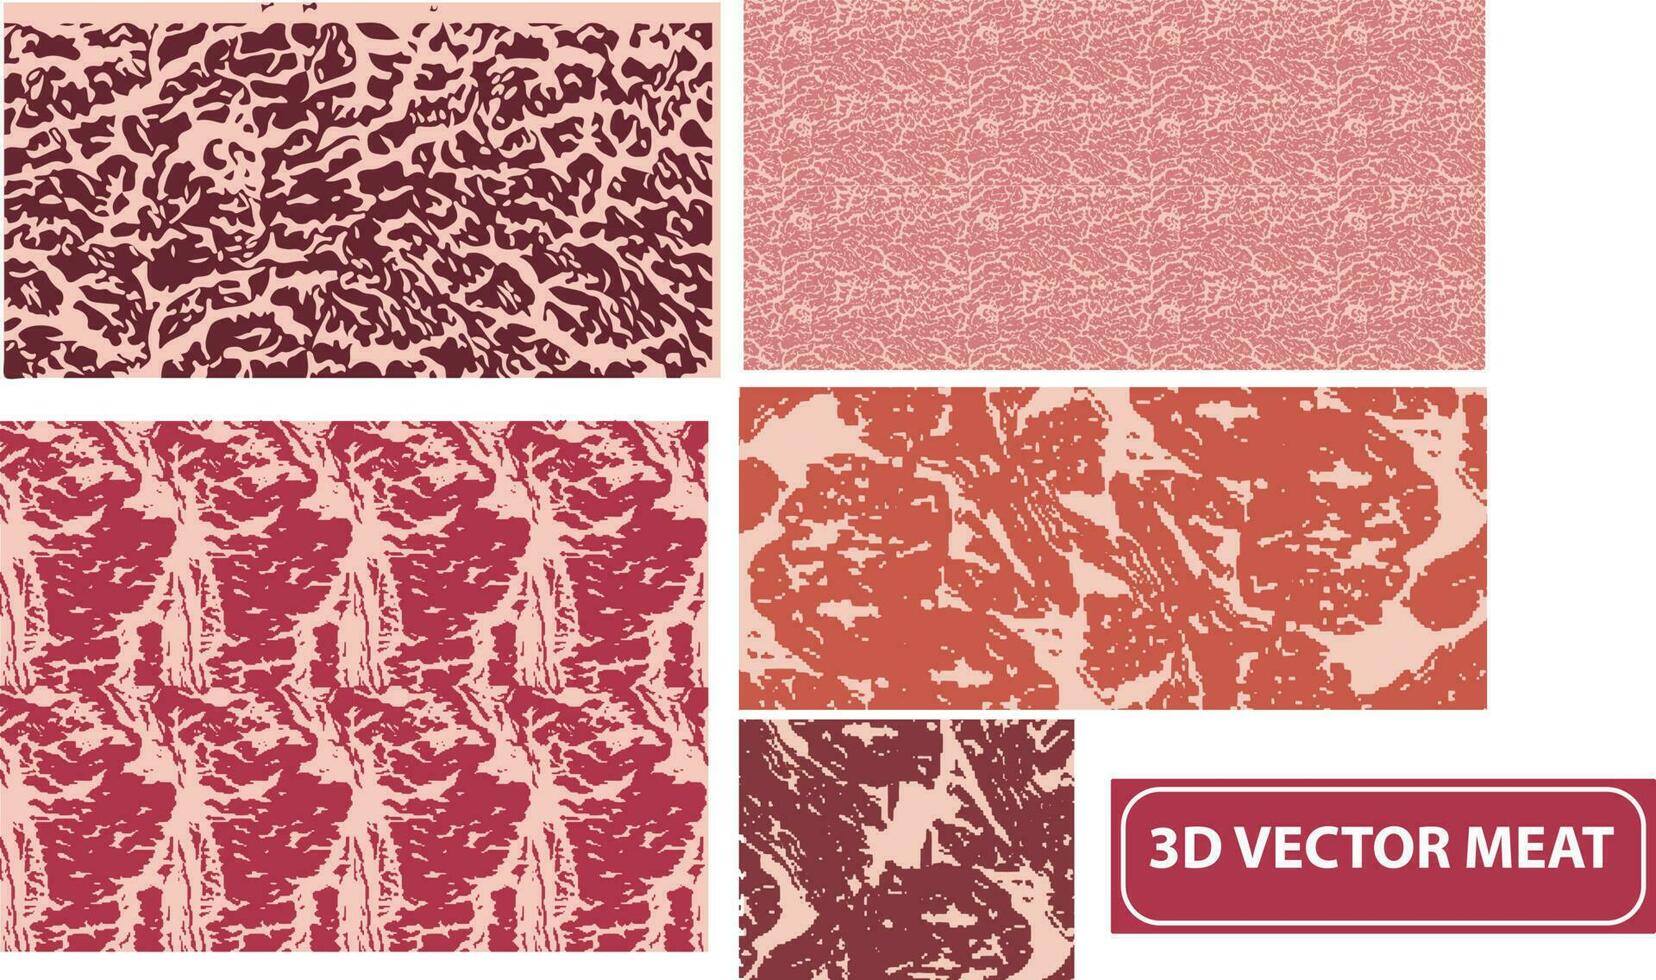 vektor uppsättning av kött bakgrund olika färger och typer eller mönster samling. nötkött, fläsk och lamm kött texturer vektor illustration